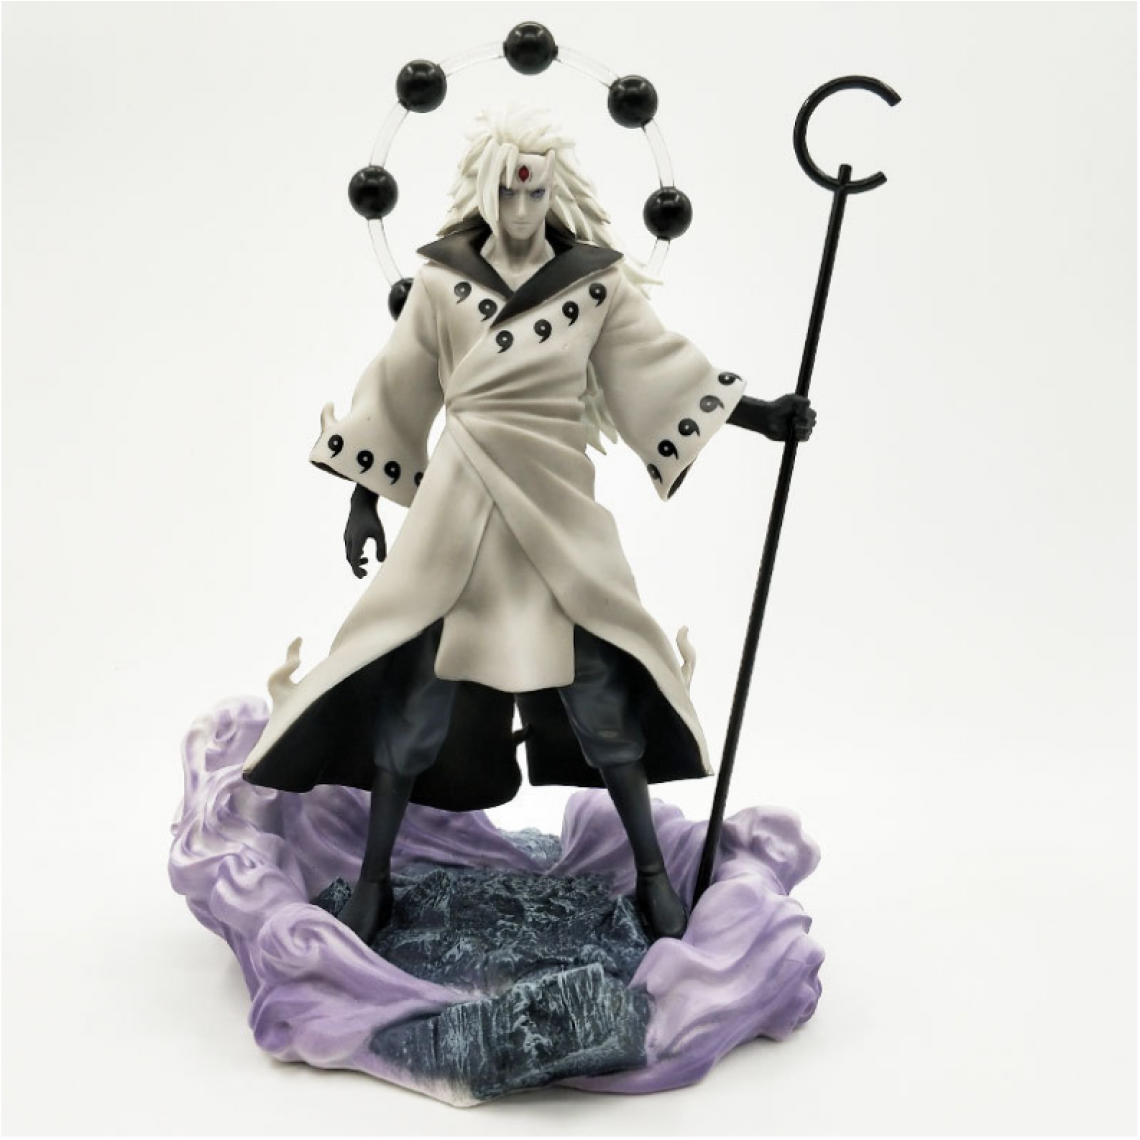 Universal - Tableau tache Uchiha version pvc dessin jouet collection modèle statue action personnage(blanche) - Mangas